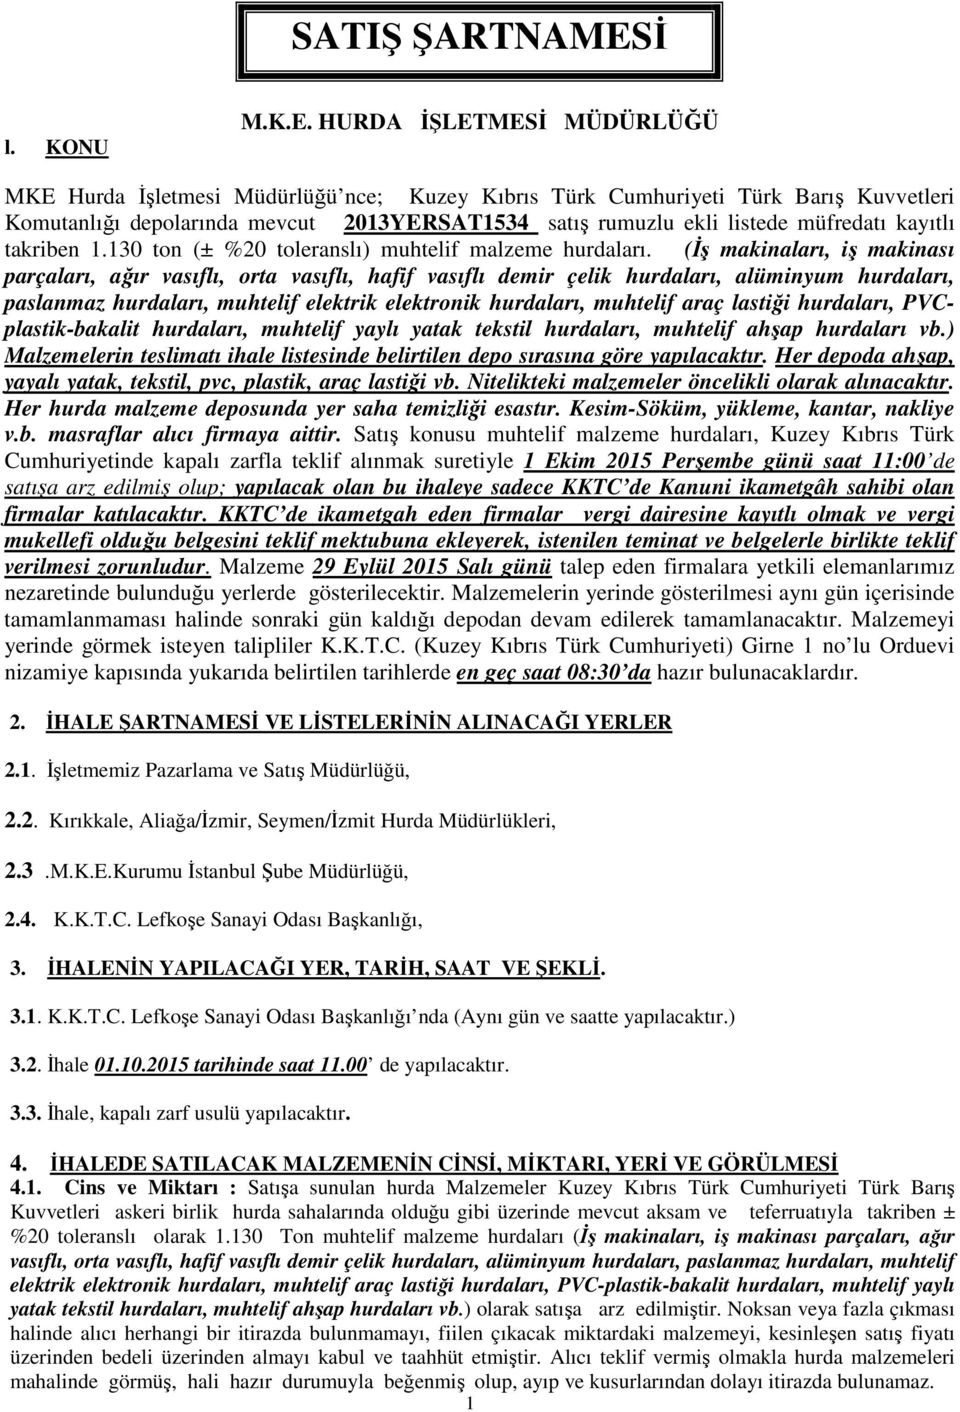 HURDA İŞLETMESİ MÜDÜRLÜĞÜ MKE Hurda İşletmesi Müdürlüğü nce; Kuzey Kıbrıs Türk Cumhuriyeti Türk Barış Kuvvetleri Komutanlığı depolarında mevcut 2013YERSAT1534 satış rumuzlu ekli listede müfredatı